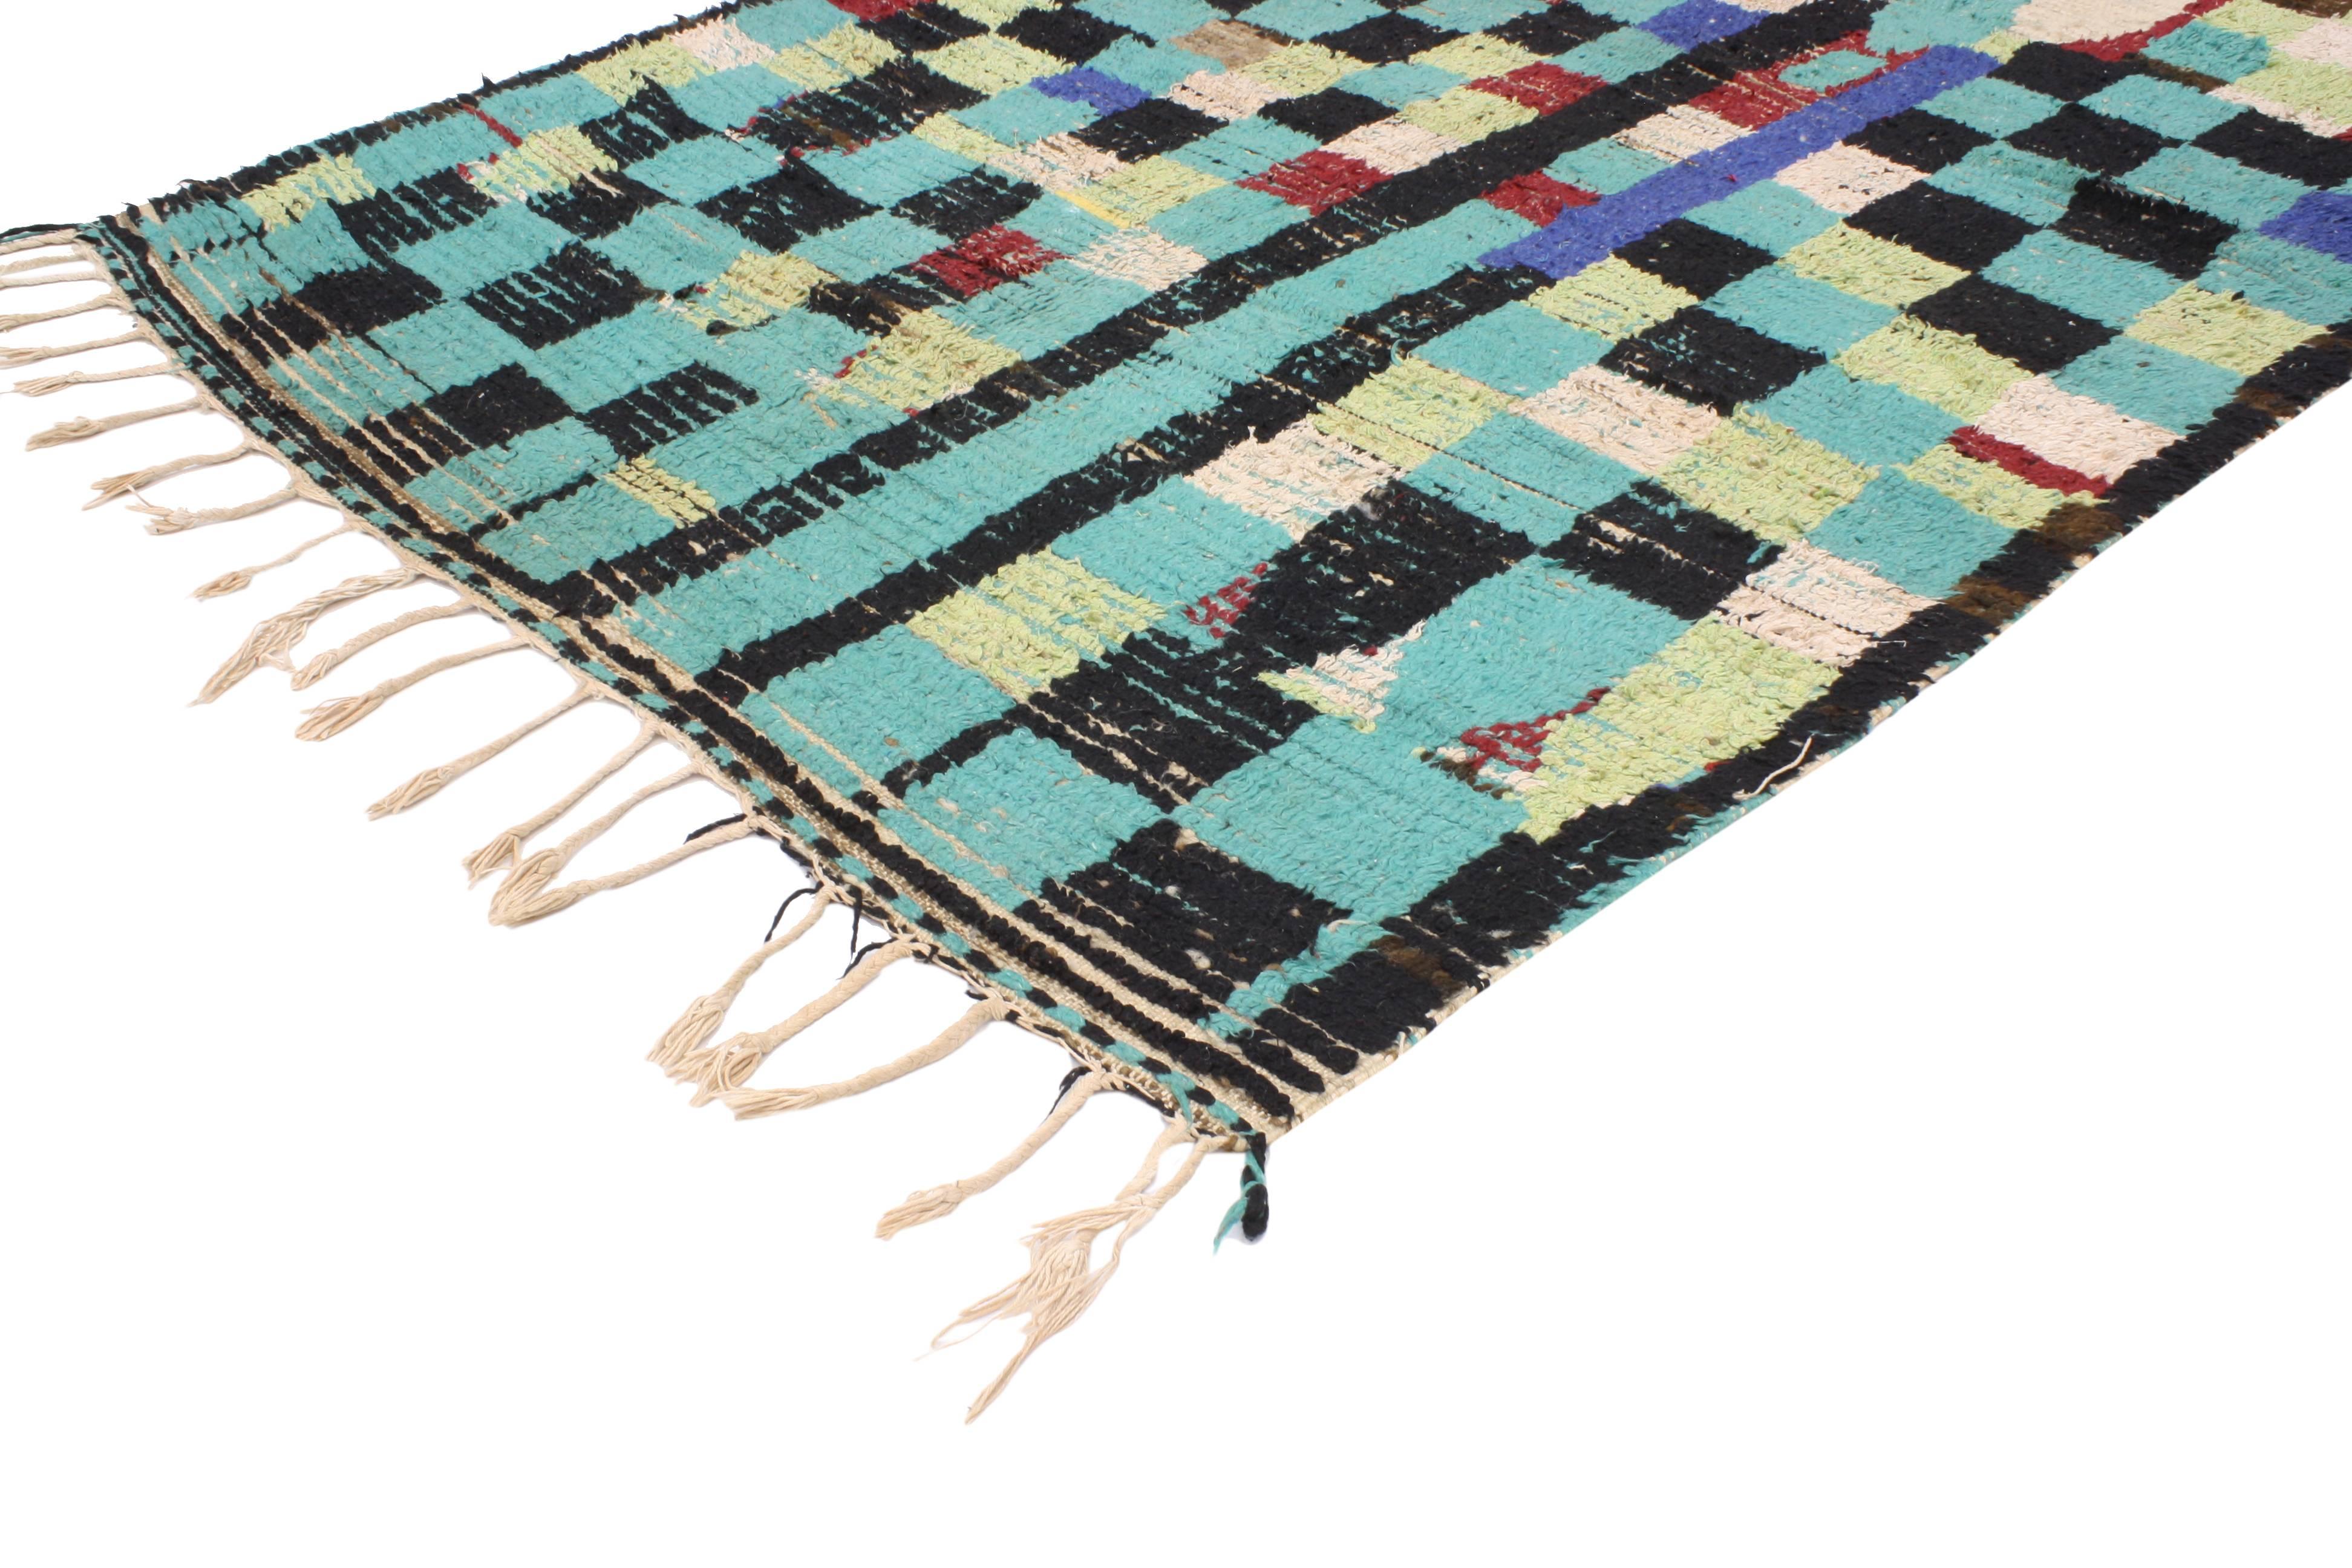 20439 Tapis berbère marocain vintage de style cubiste Bauhaus. Ce tapis marocain vintage en laine noué à la main présente un motif géométrique composé de carrés et de rectangles (baguettes). Les tiges carrées et rectangulaires s'unissent pour créer